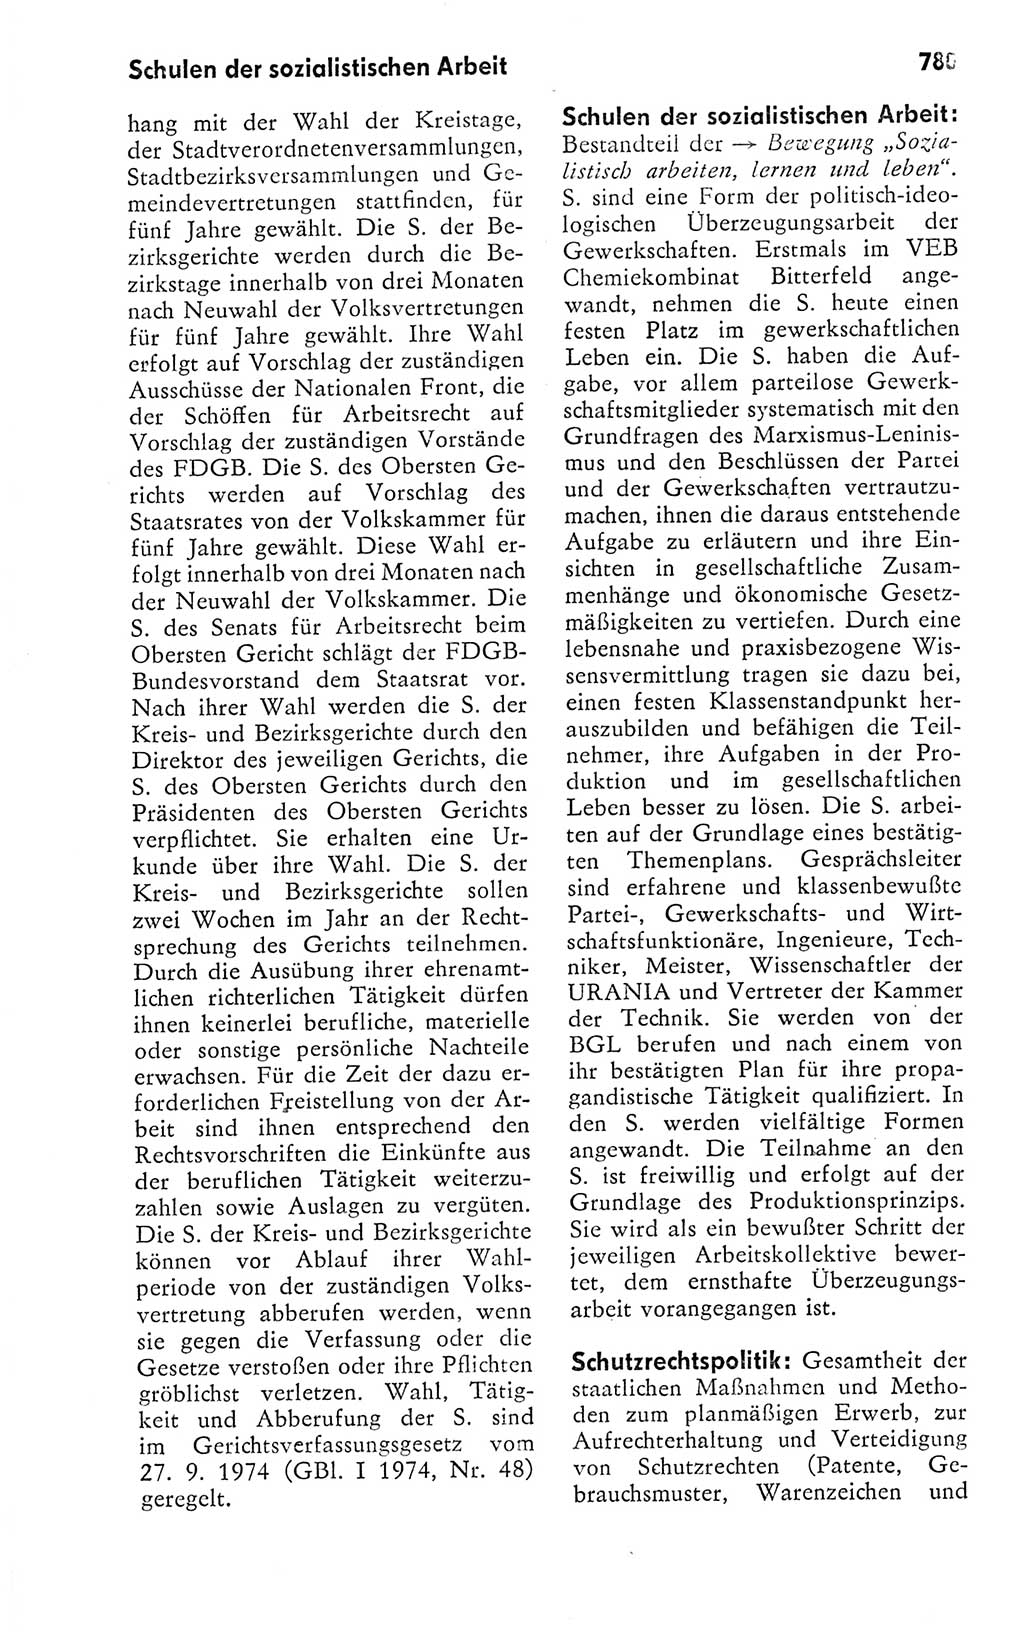 Kleines politisches Wörterbuch [Deutsche Demokratische Republik (DDR)] 1978, Seite 780 (Kl. pol. Wb. DDR 1978, S. 780)